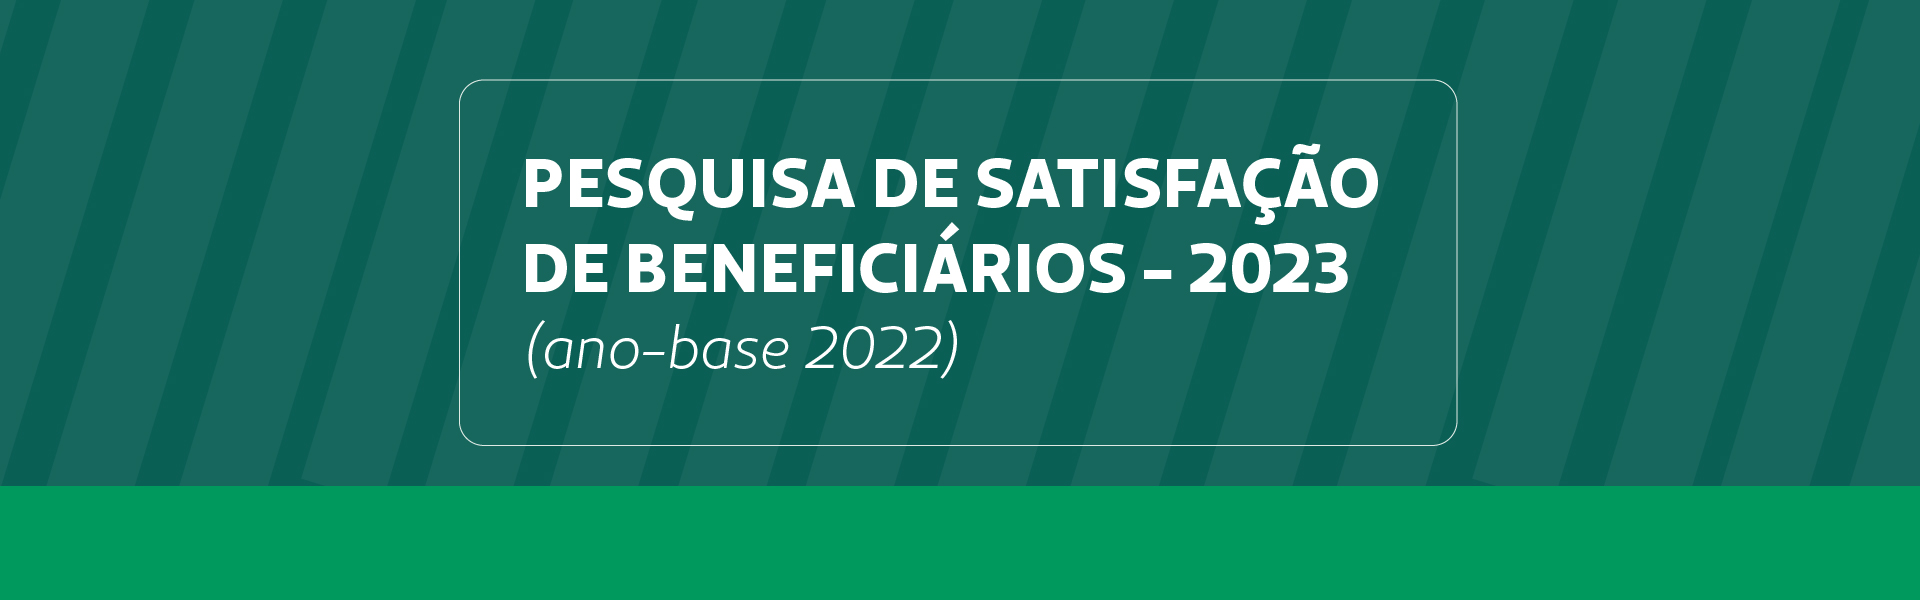 Pesquisa de Satisfação de Beneficiários 2023 (ano-base 2022)